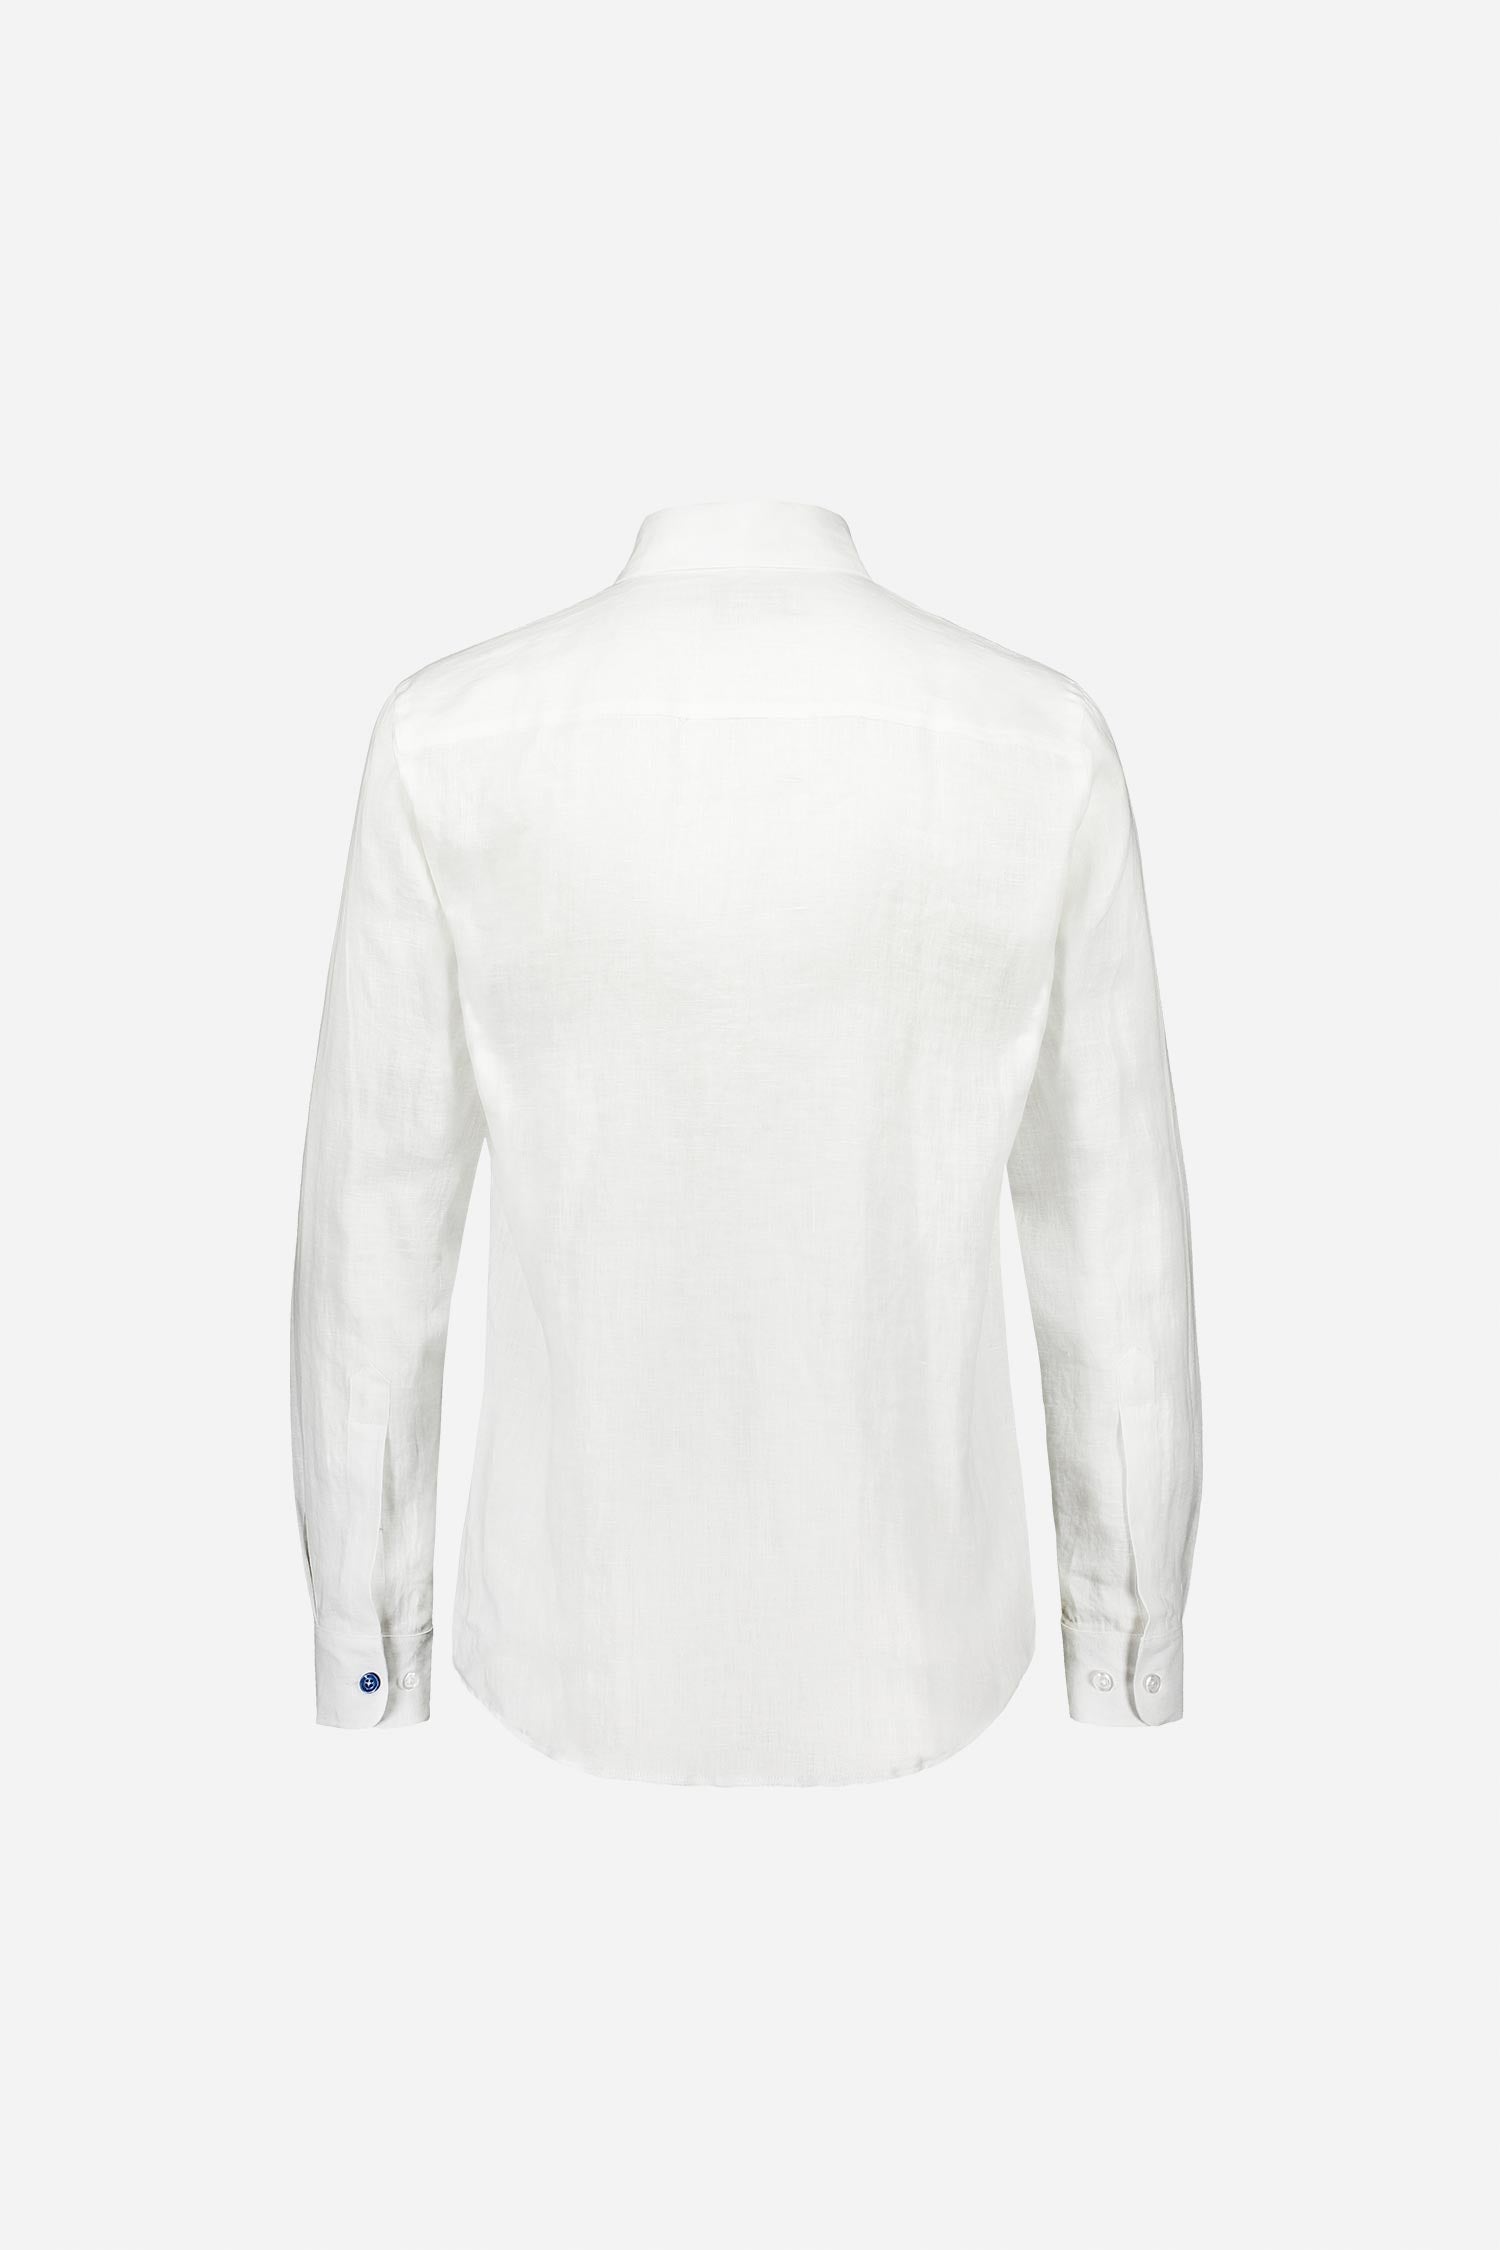 Frenn Aapo sustainable premium quality linen shirt white